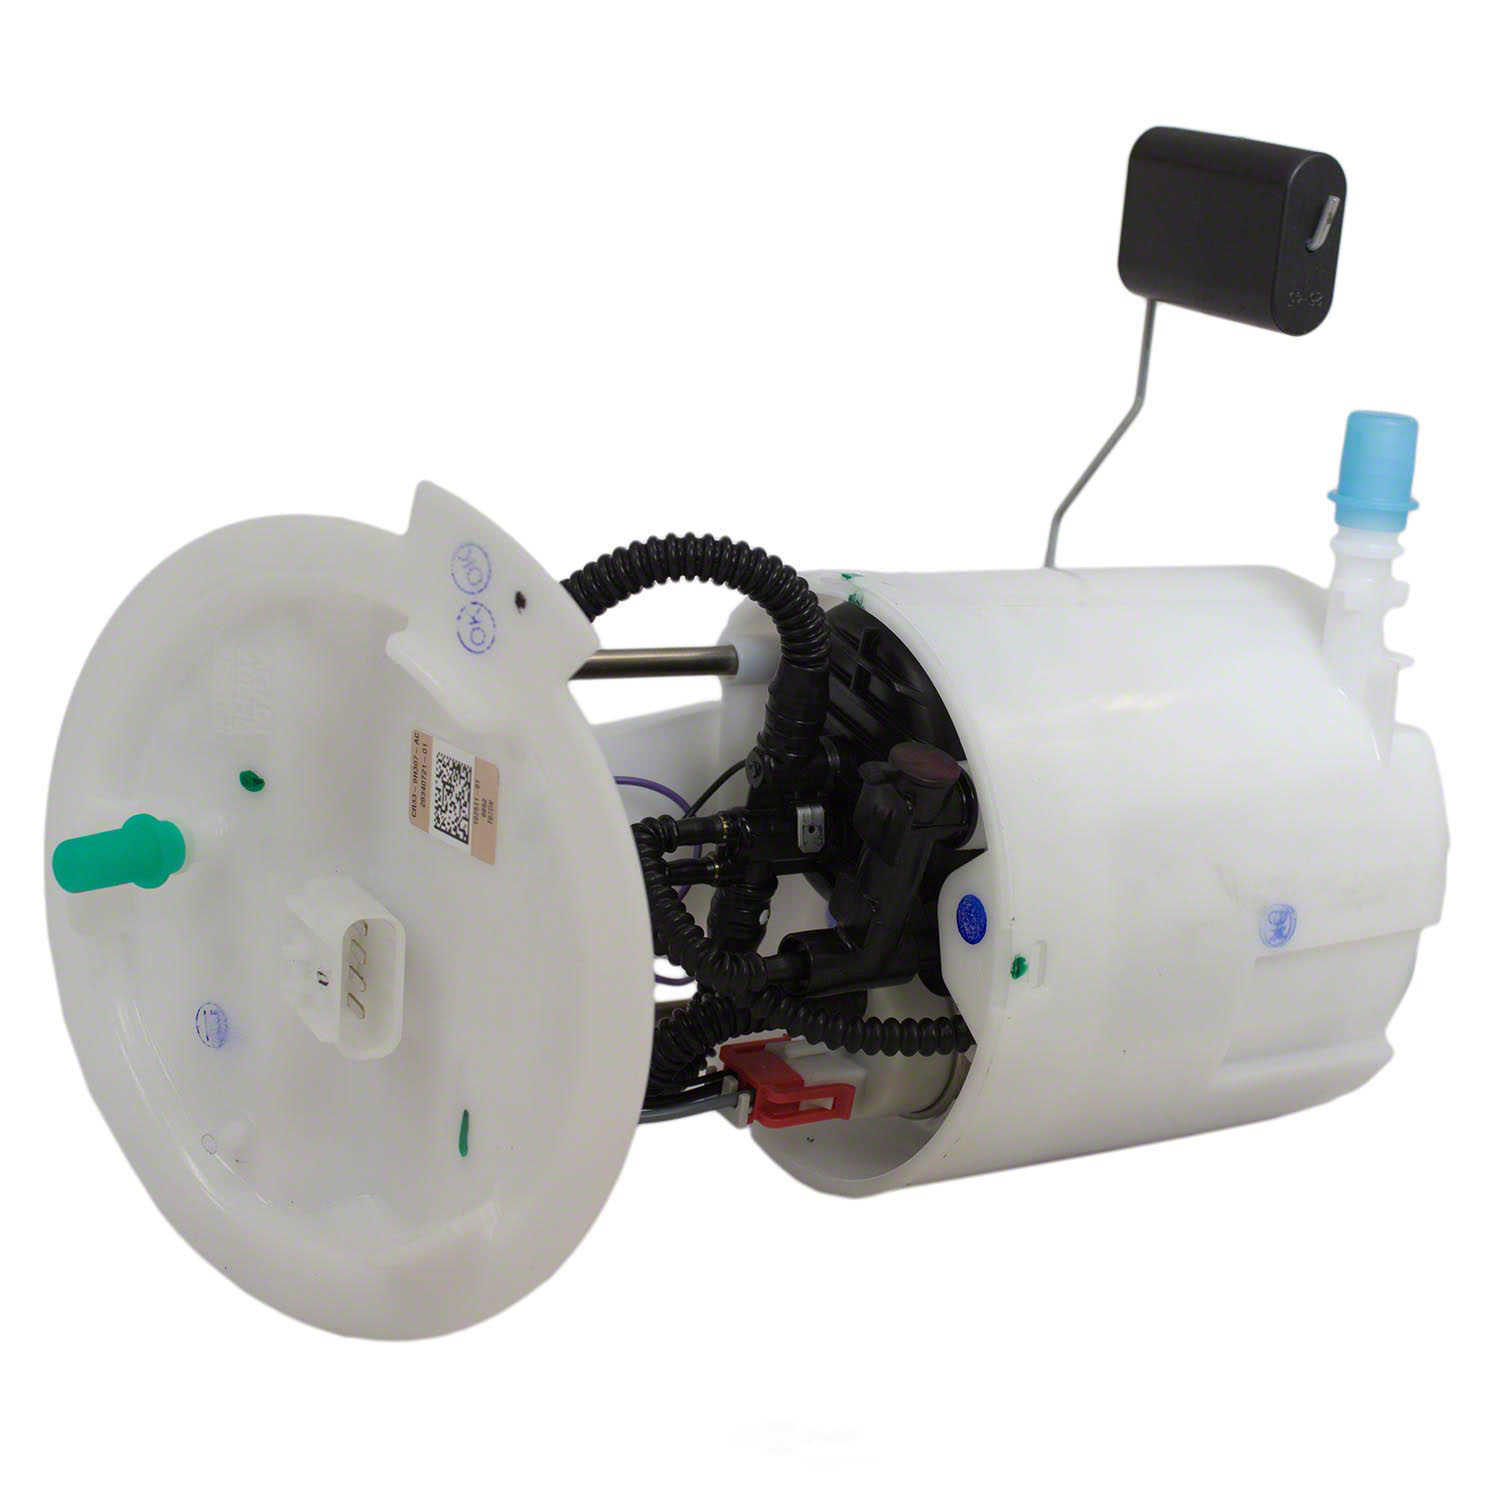 MOTORCRAFT - Fuel Pump And Sender Assembly - MOT PFS-952